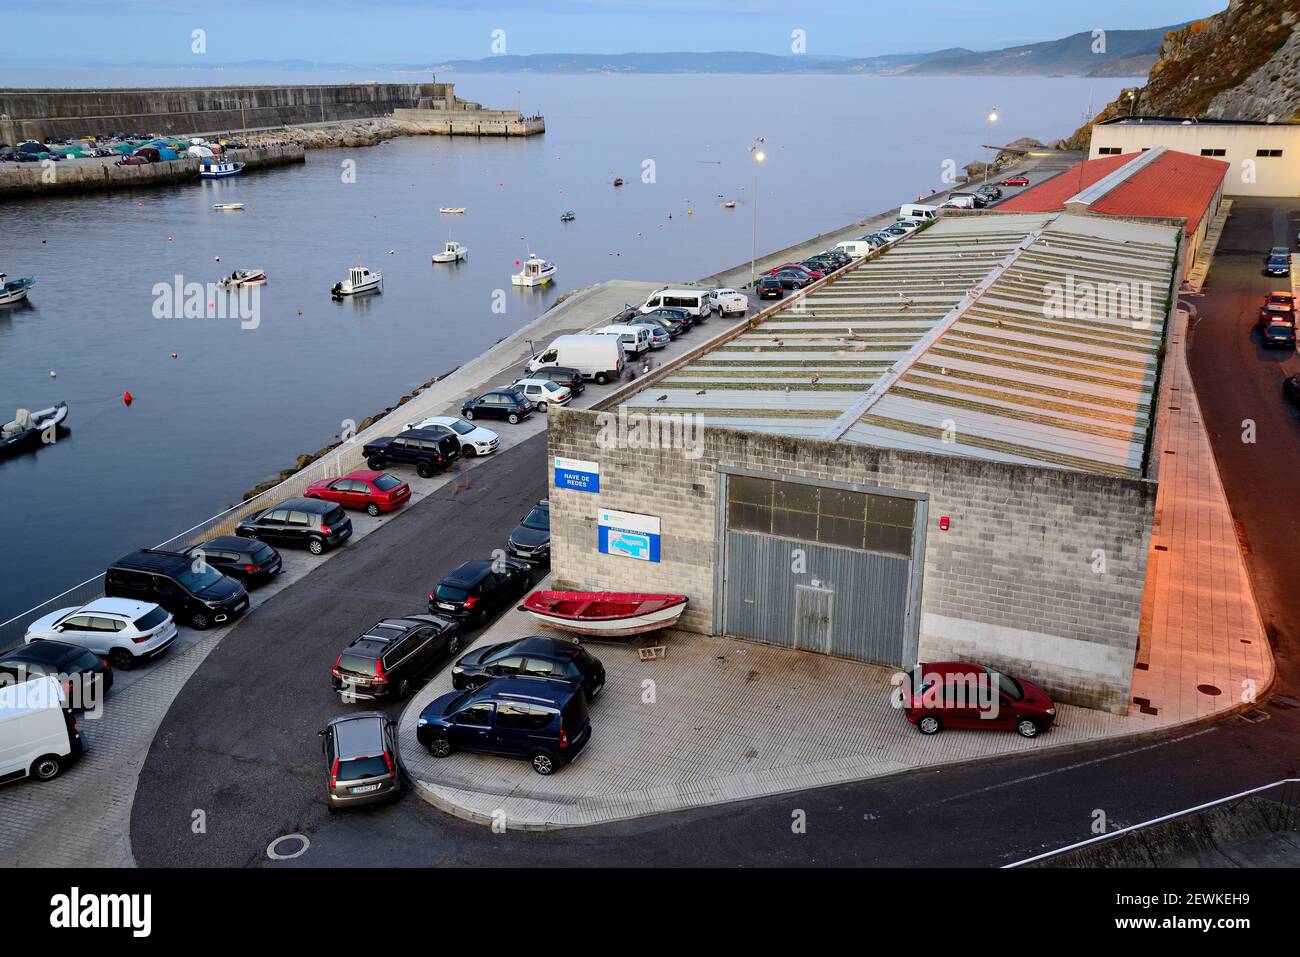 Almacén en el puerto marítimo de Malpica de Bergantiños, A Coruña, España  Fotografía de stock - Alamy